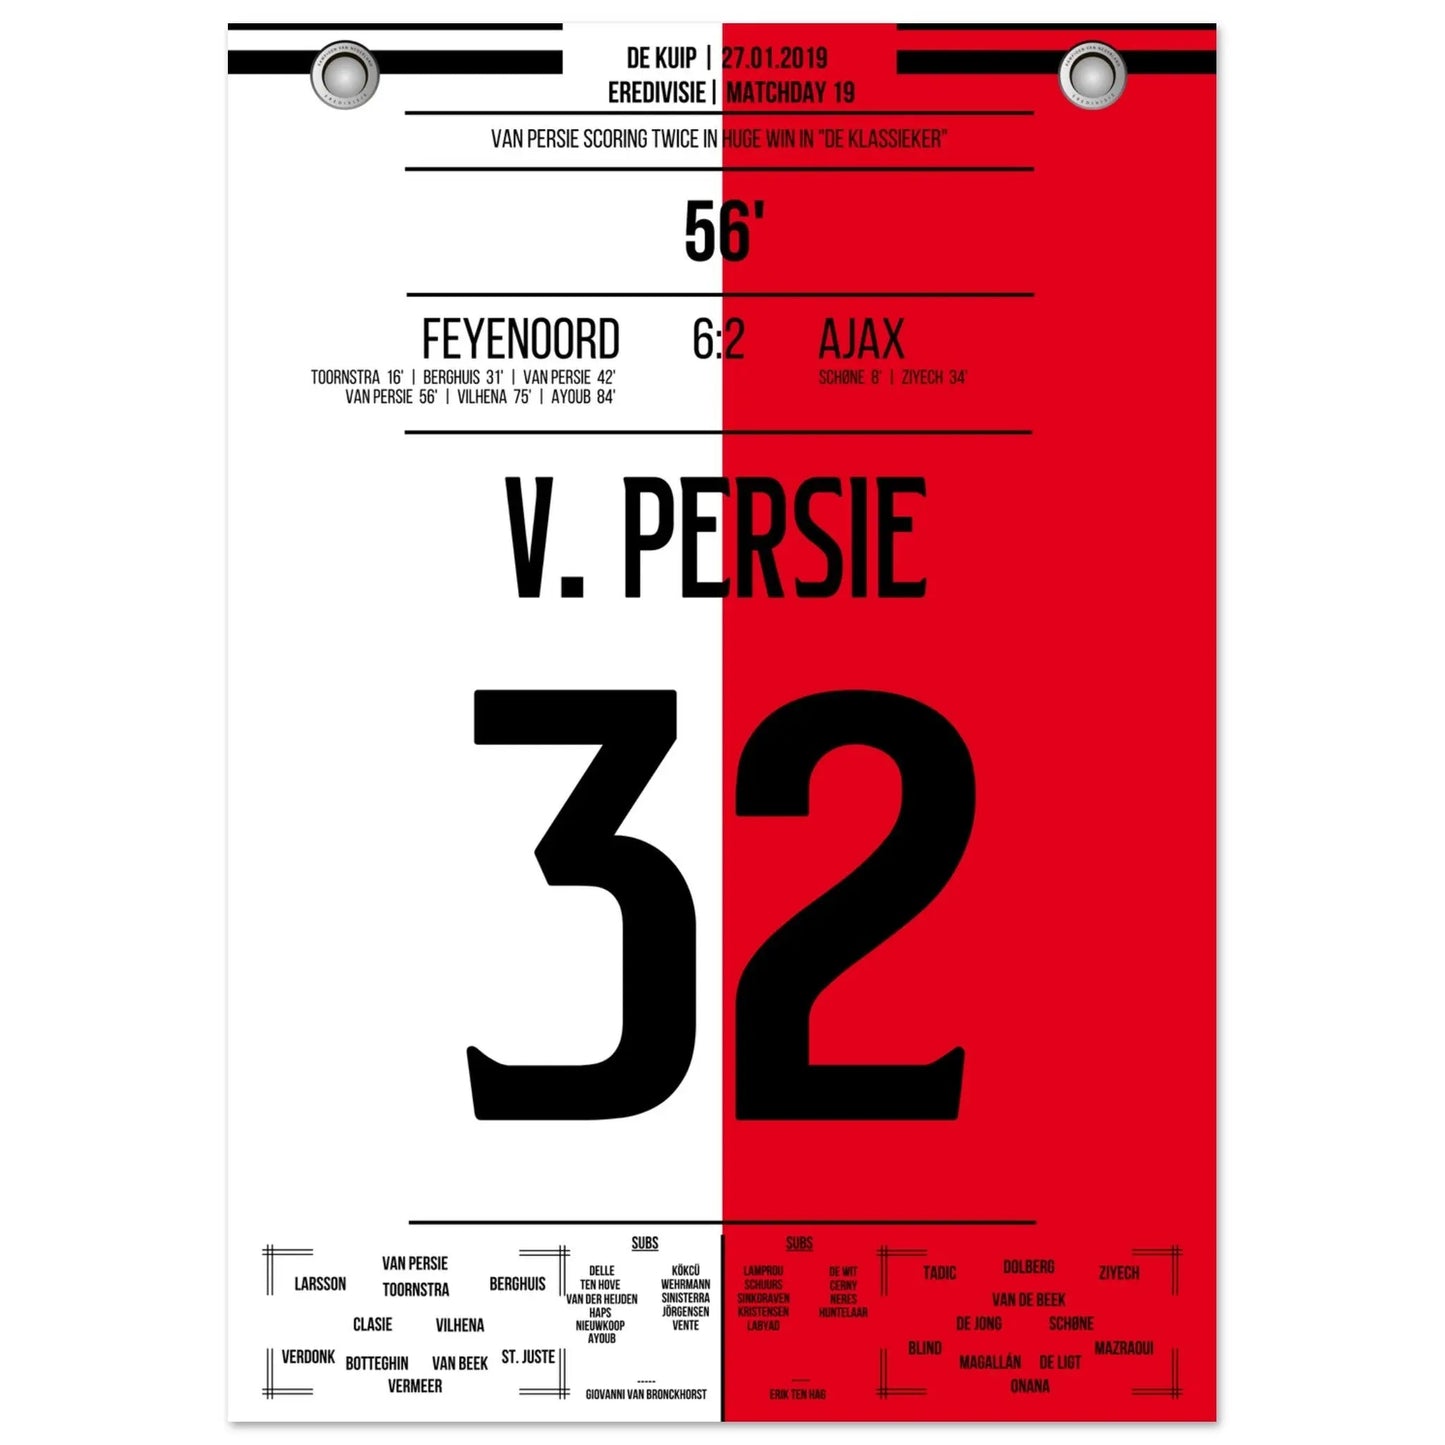 Van Persie con doblete en “De Klassieker” 2019